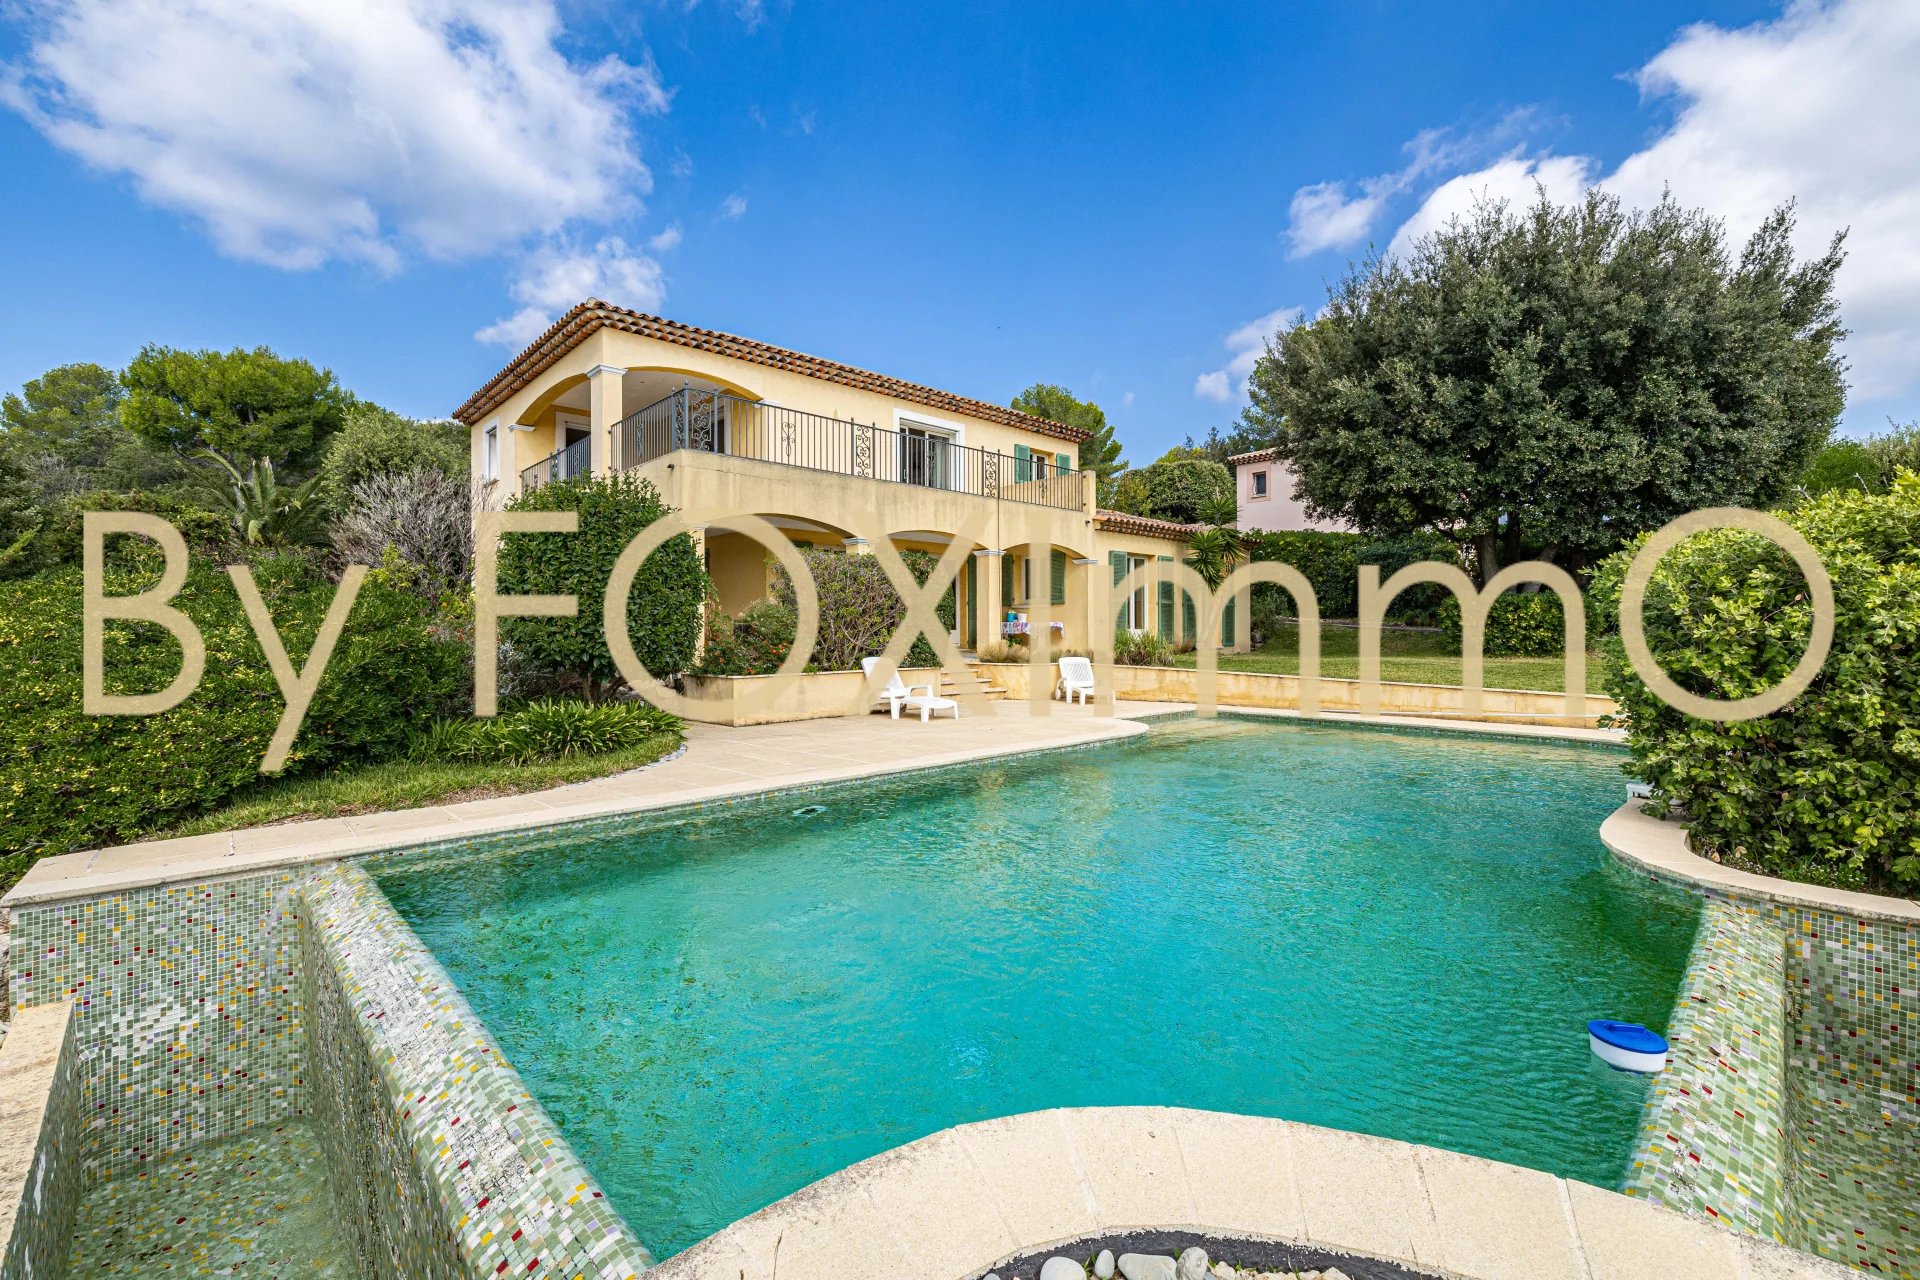 A vendre sur la Côte d'Azur,  villa 6 pièces au calme absolu, position dominante et vue mer